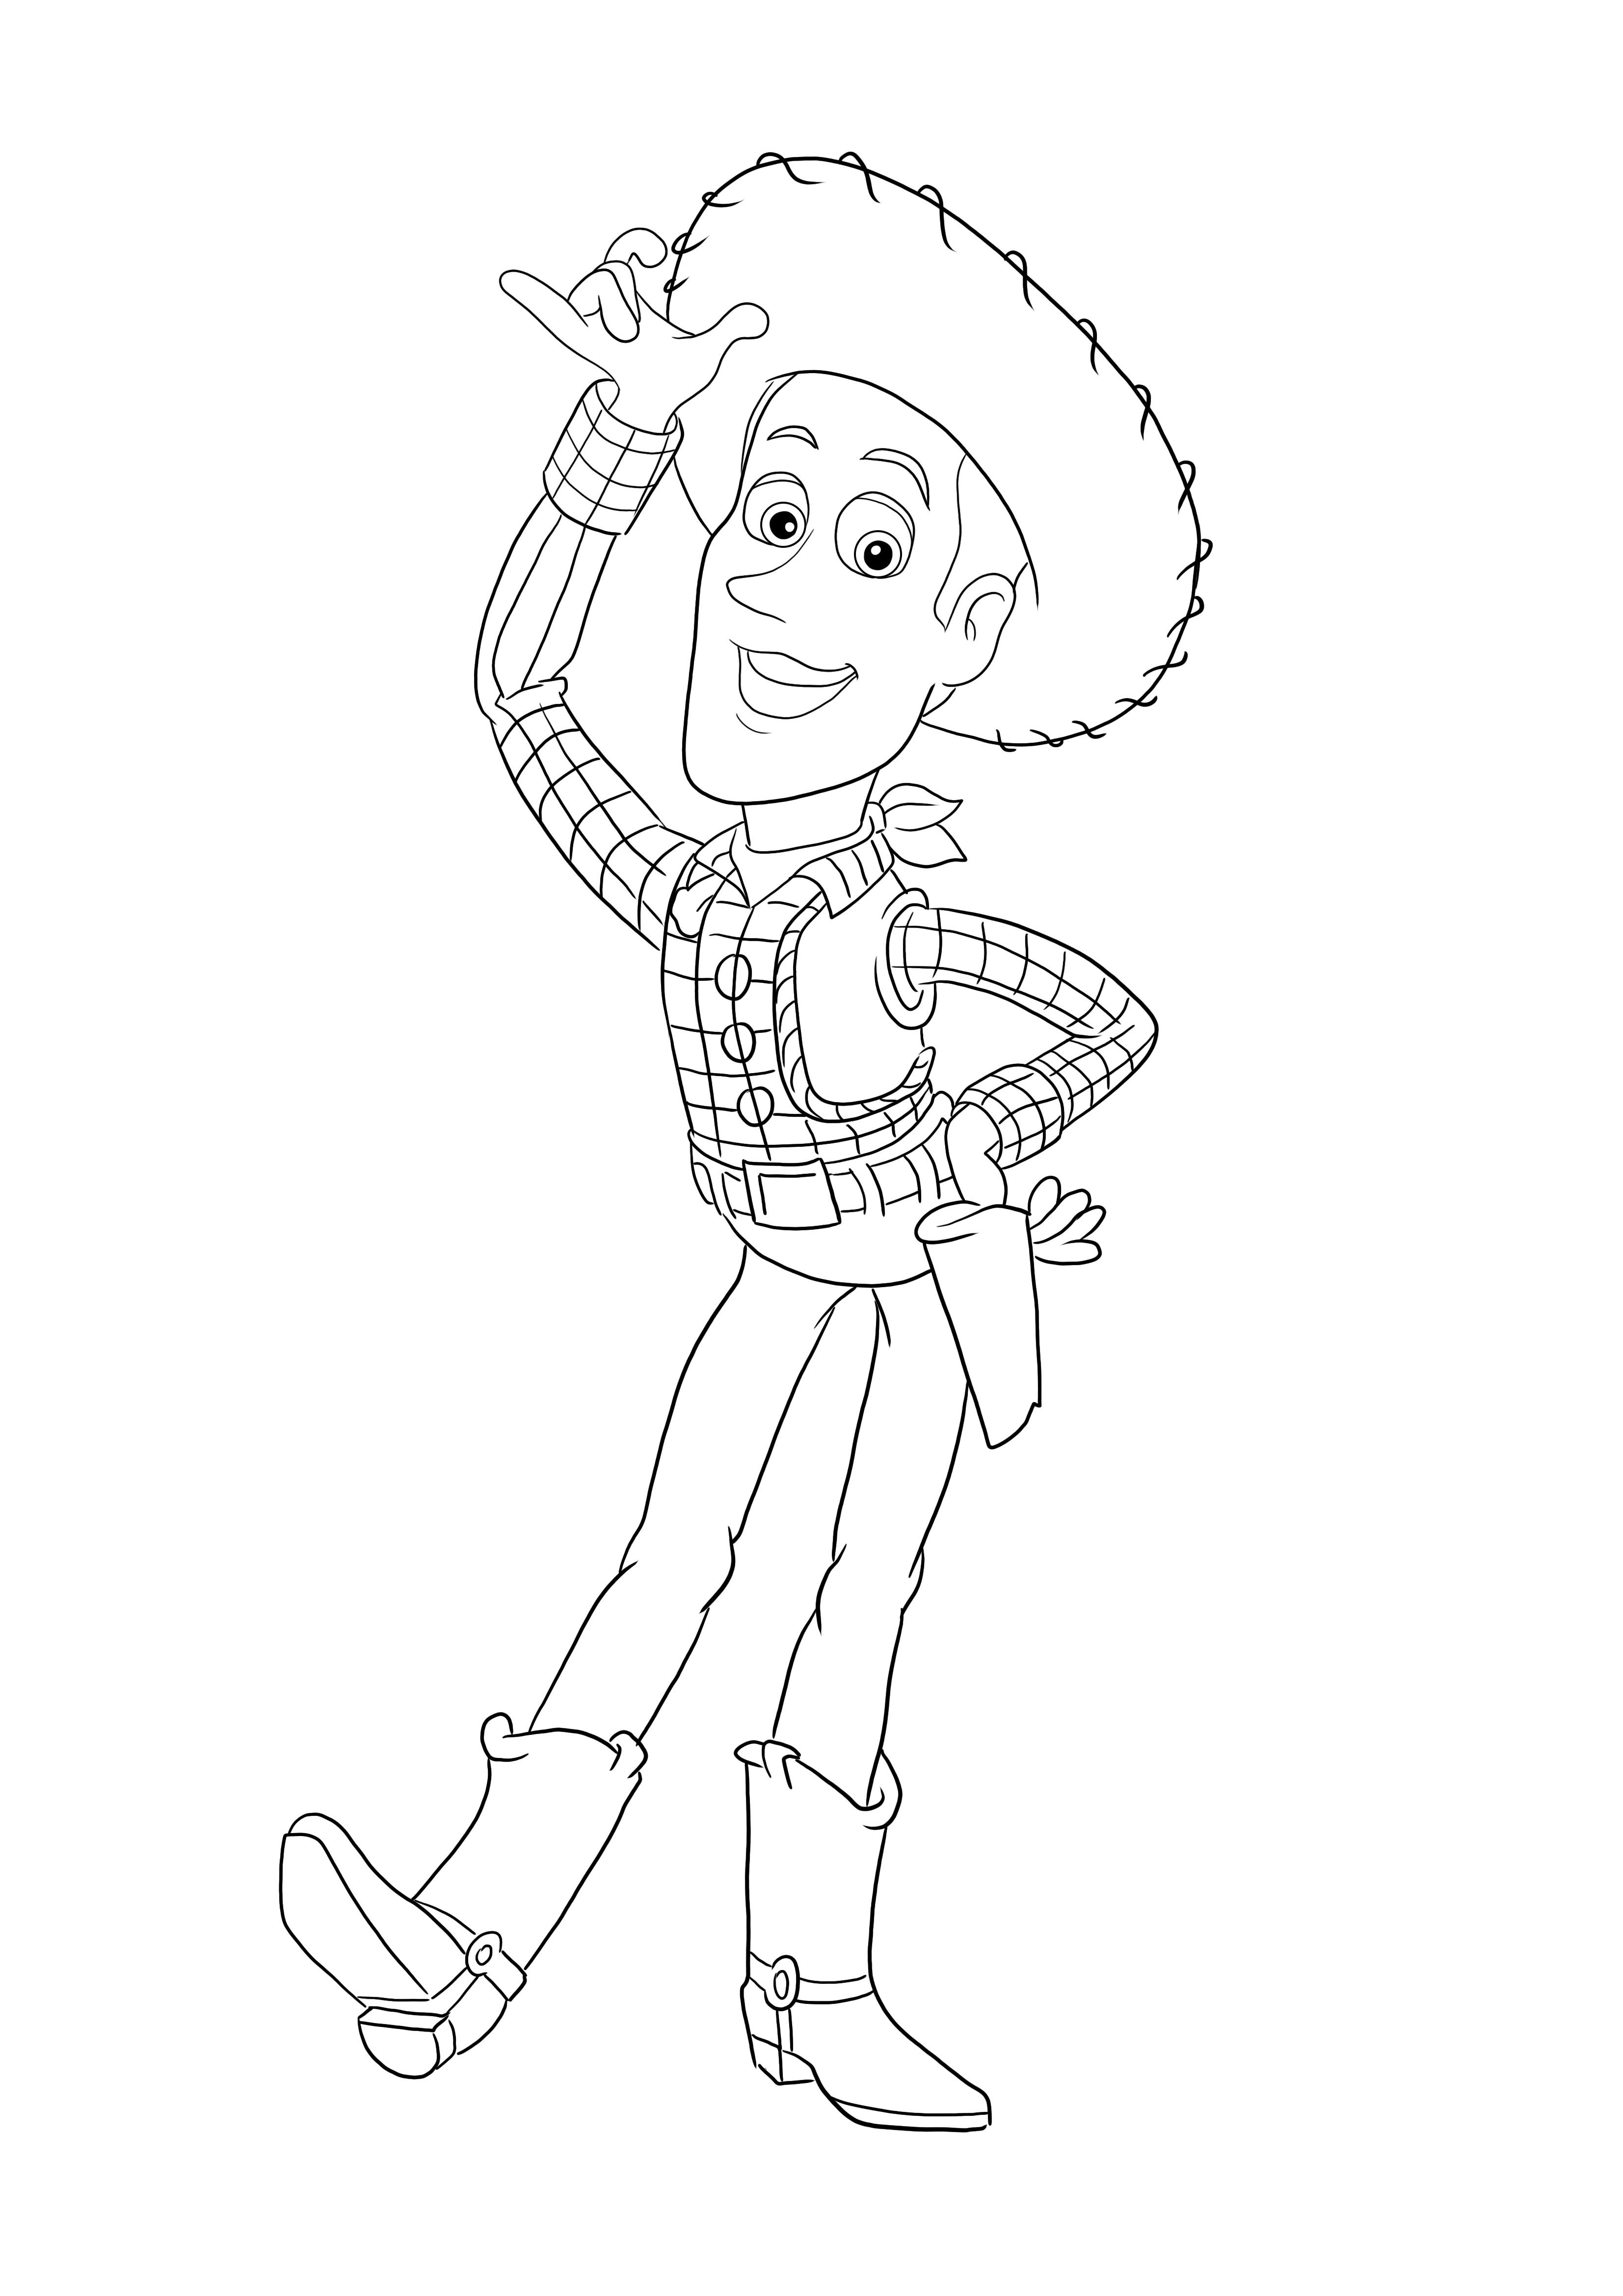 Dibujos para colorear de Woody de Toy Story gratis para imprimir o descargar para todas las edades